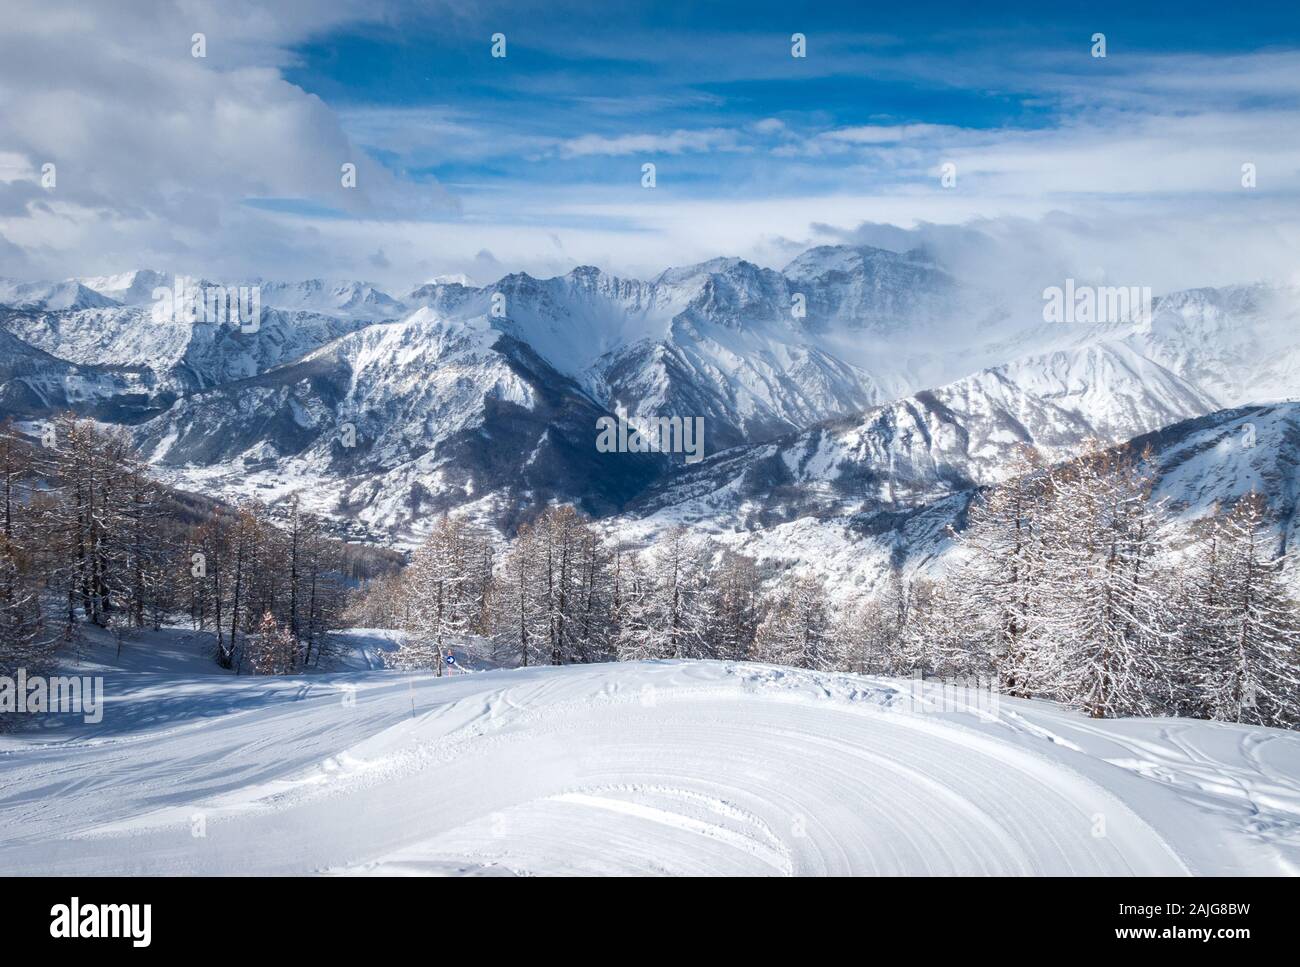 Panorama de Bardonecchia, Piémont, Italie, Alpes italiennes, couverte de neige fraîche après une chute de neige, les pentes enneigées, paysage d'hiver, ski Banque D'Images